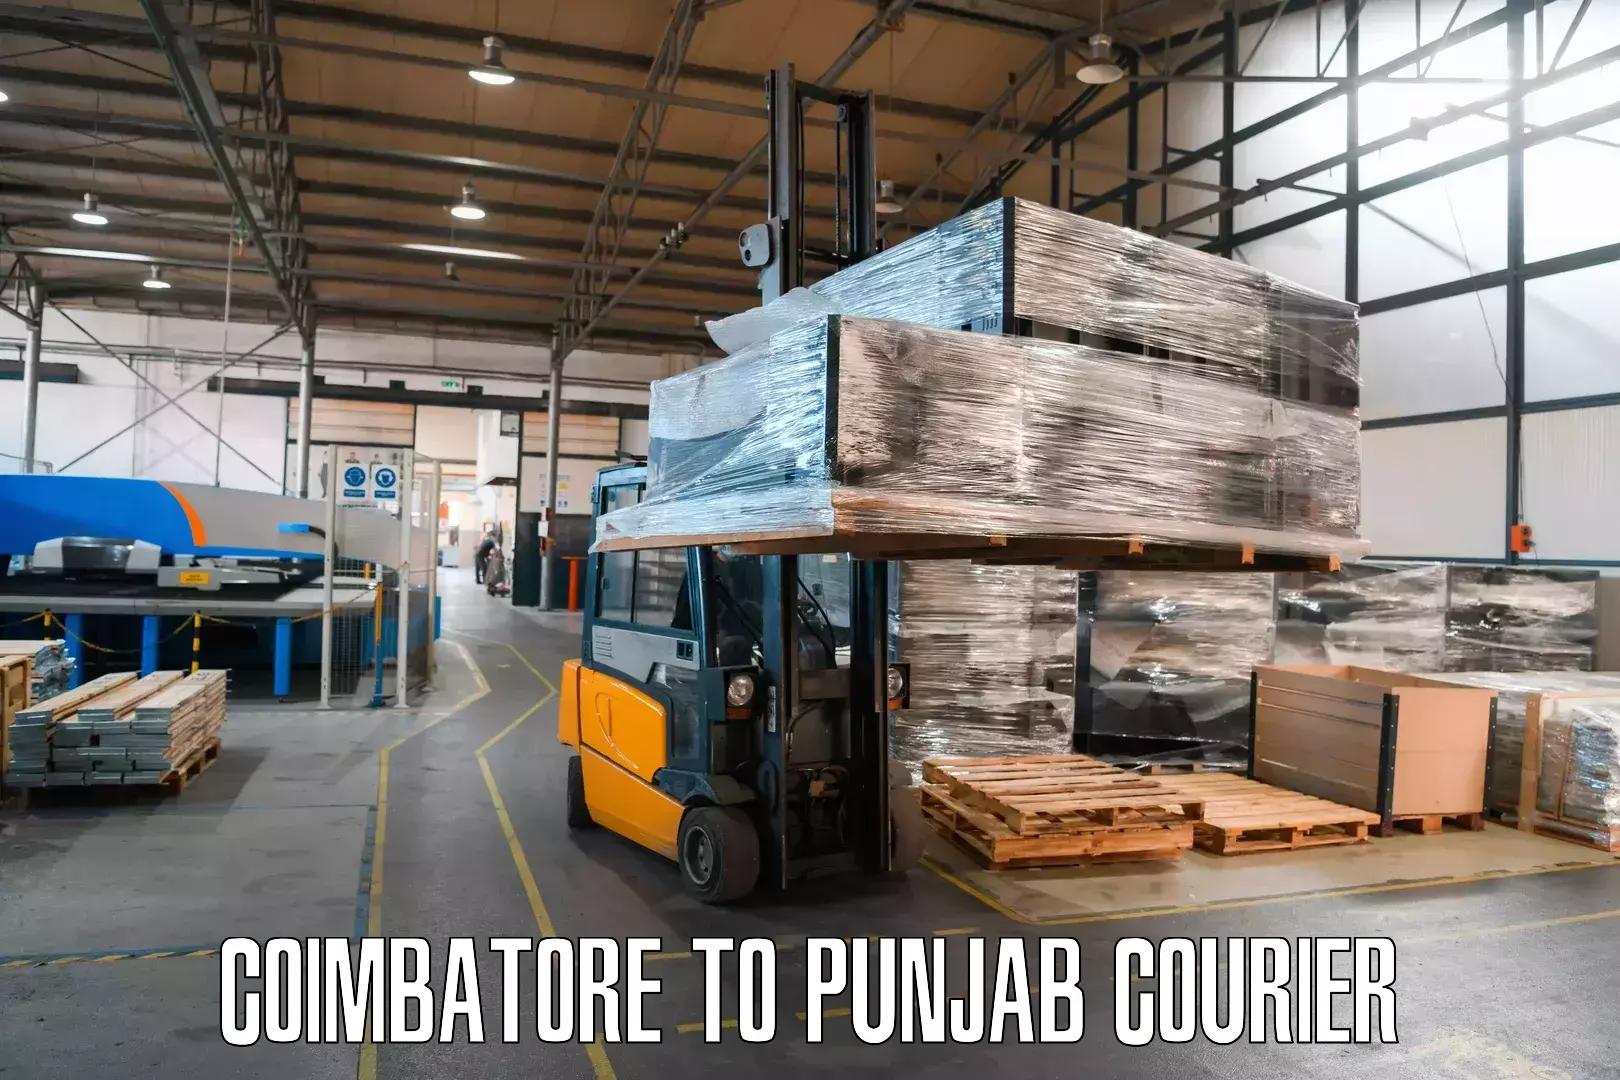 High-performance logistics Coimbatore to Punjab